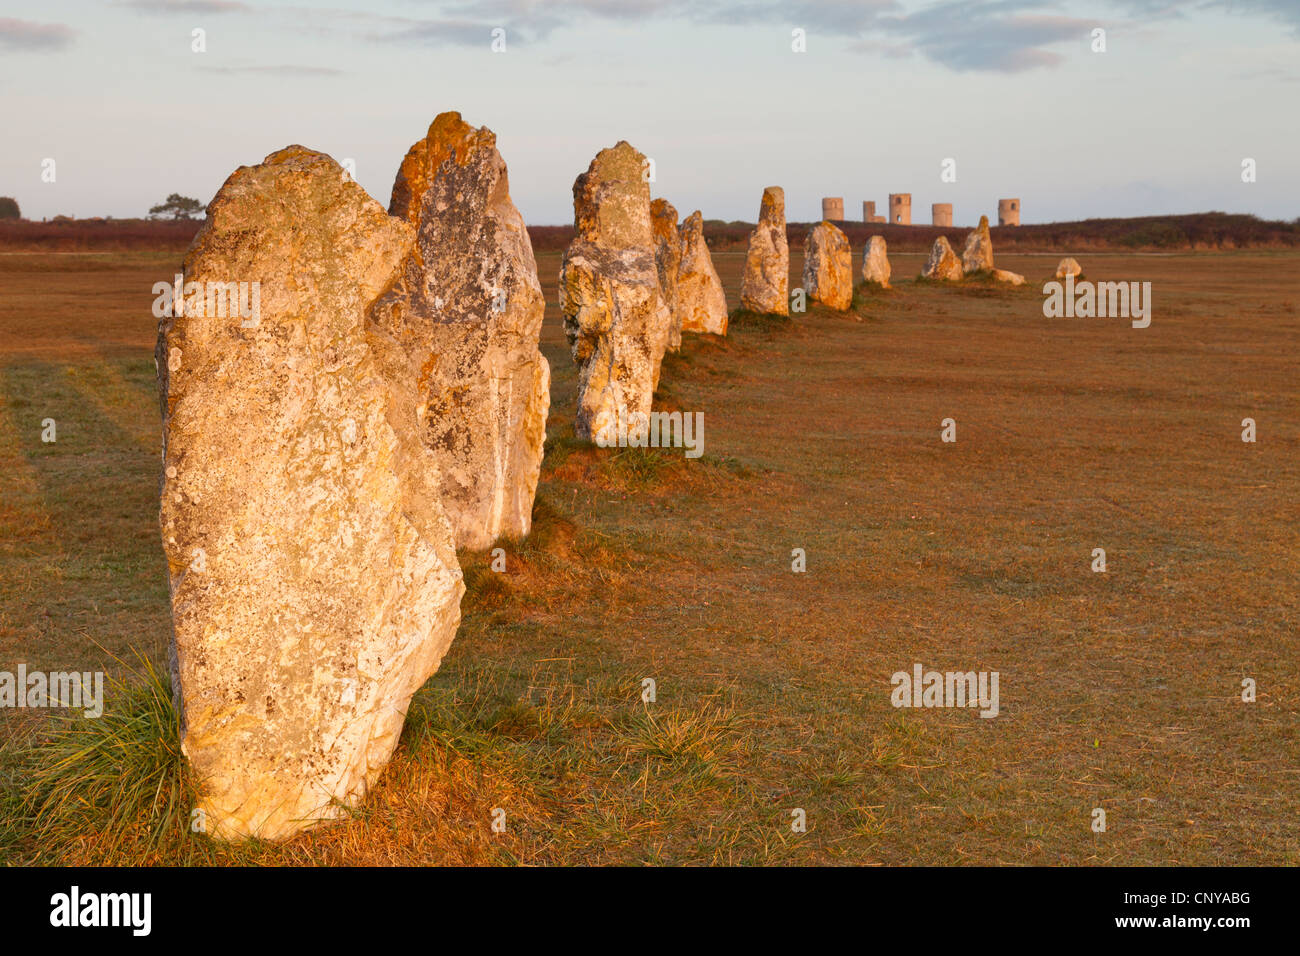 Les pierres dans les alignements de Lagatjar, à la périphérie de Camaret-sur-Mer, Bretagne, France. Shallow DOF, accent sur près de pierre. Banque D'Images